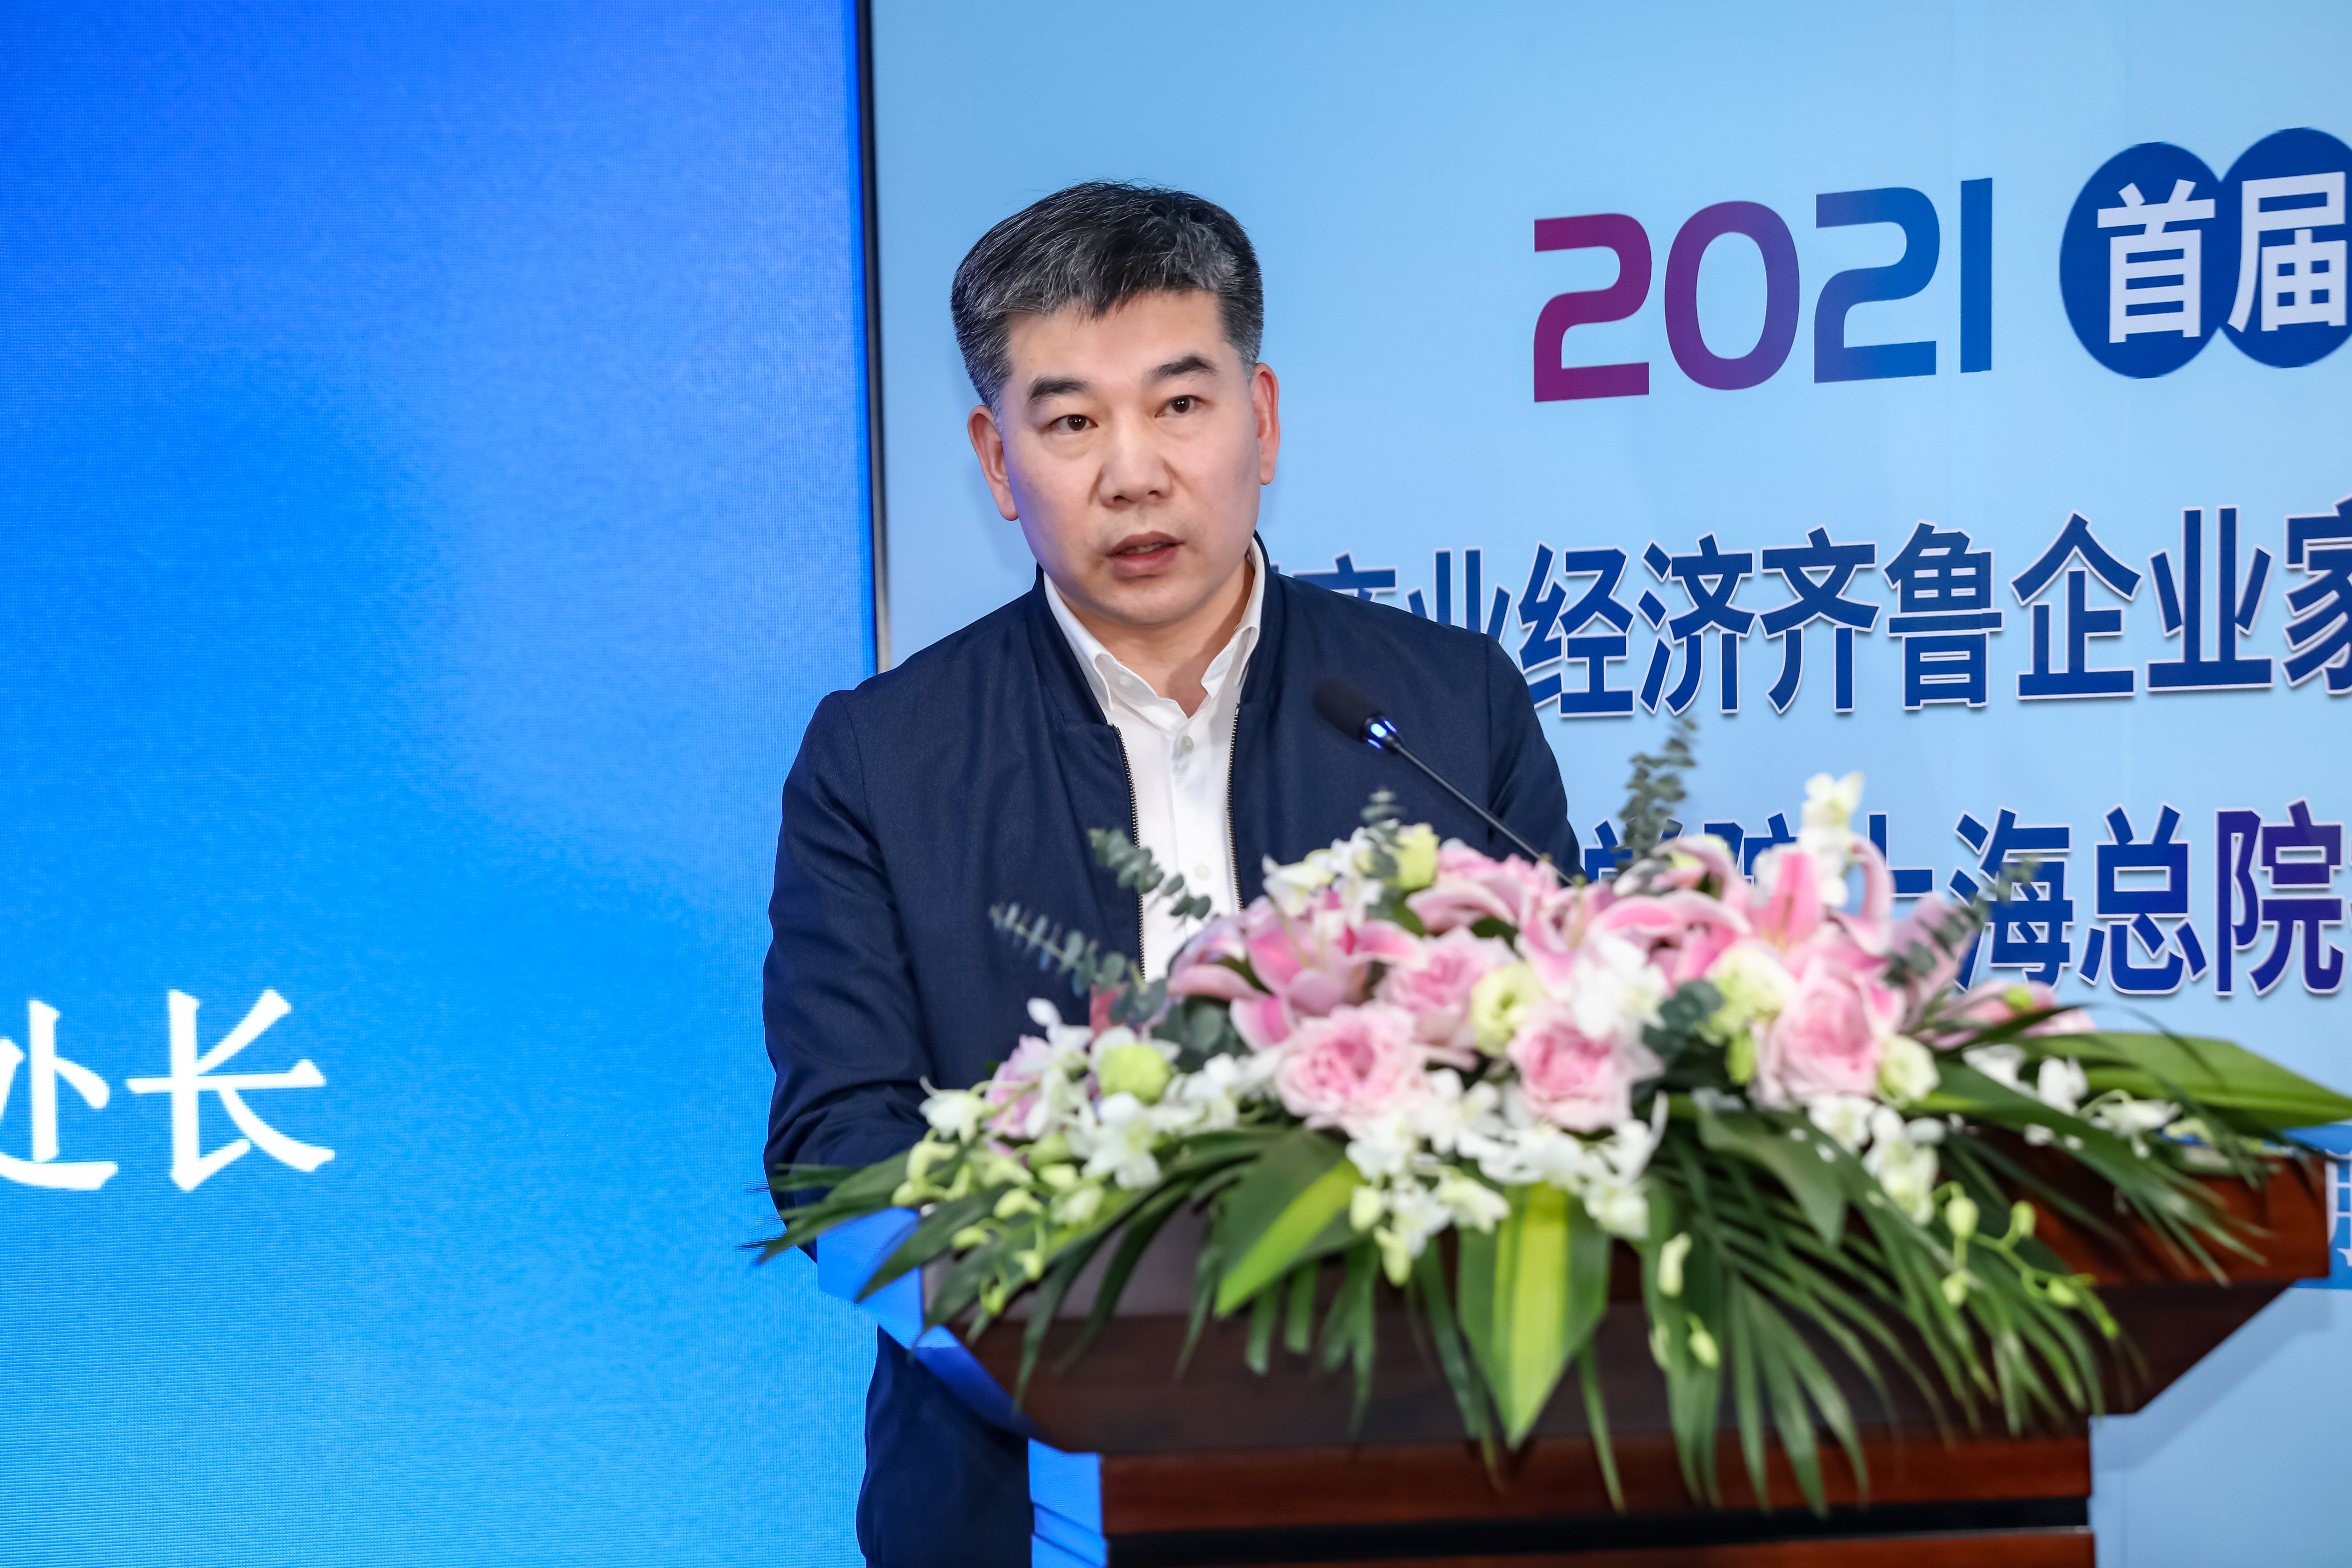 齐鲁商学院上海总院揭牌 未来将聚焦智库平台建设等方面